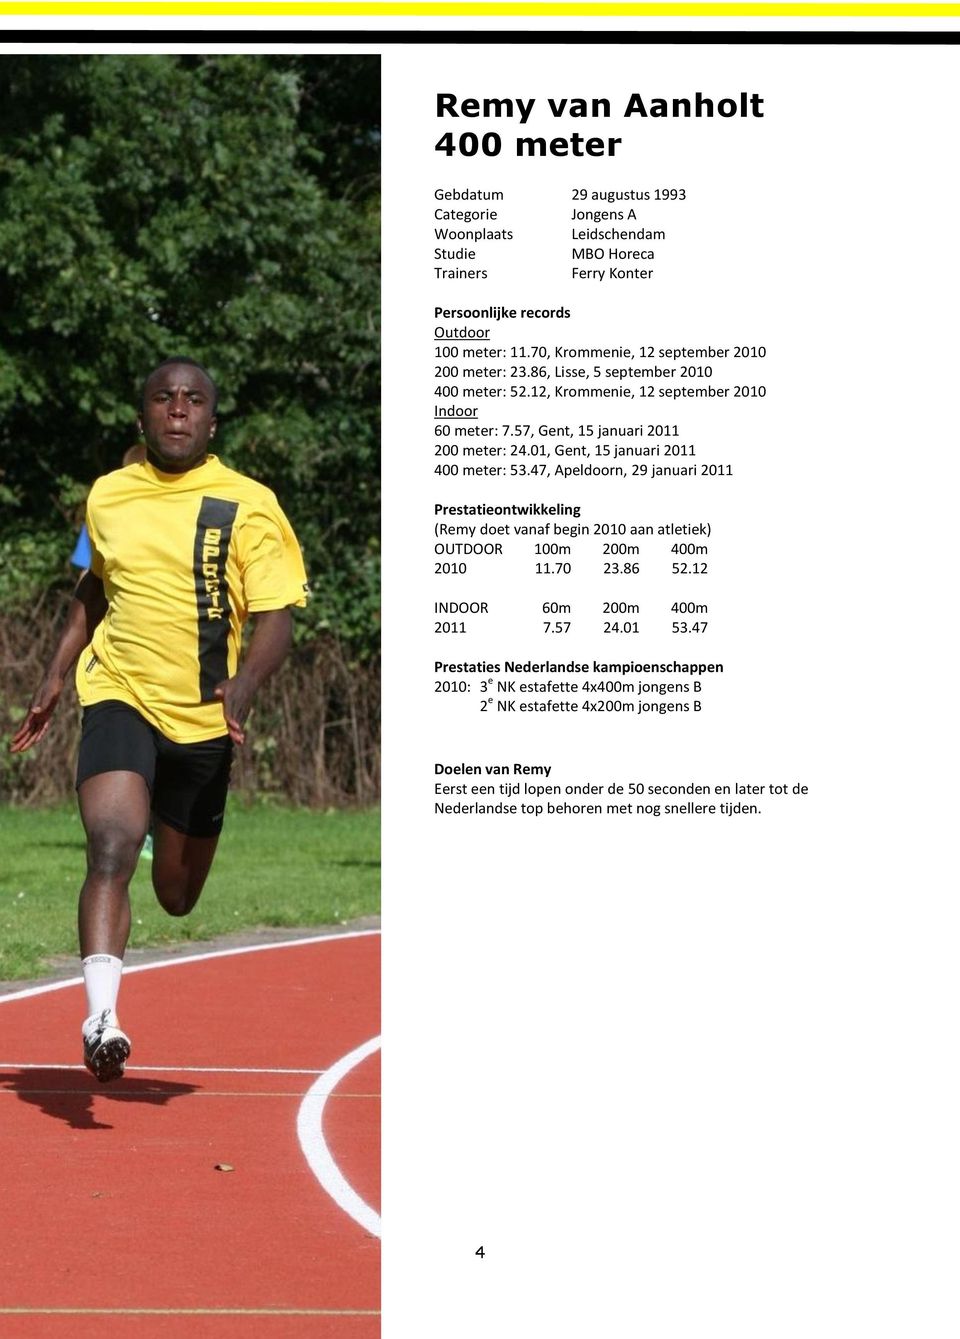 01, Gent, 15 januari 2011 400 meter: 53.47, Apeldoorn, 29 januari 2011 Prestatieontwikkeling (Remy doet vanaf begin 2010 aan atletiek) OUTDOOR 100m 200m 400m 2010 11.70 23.86 52.